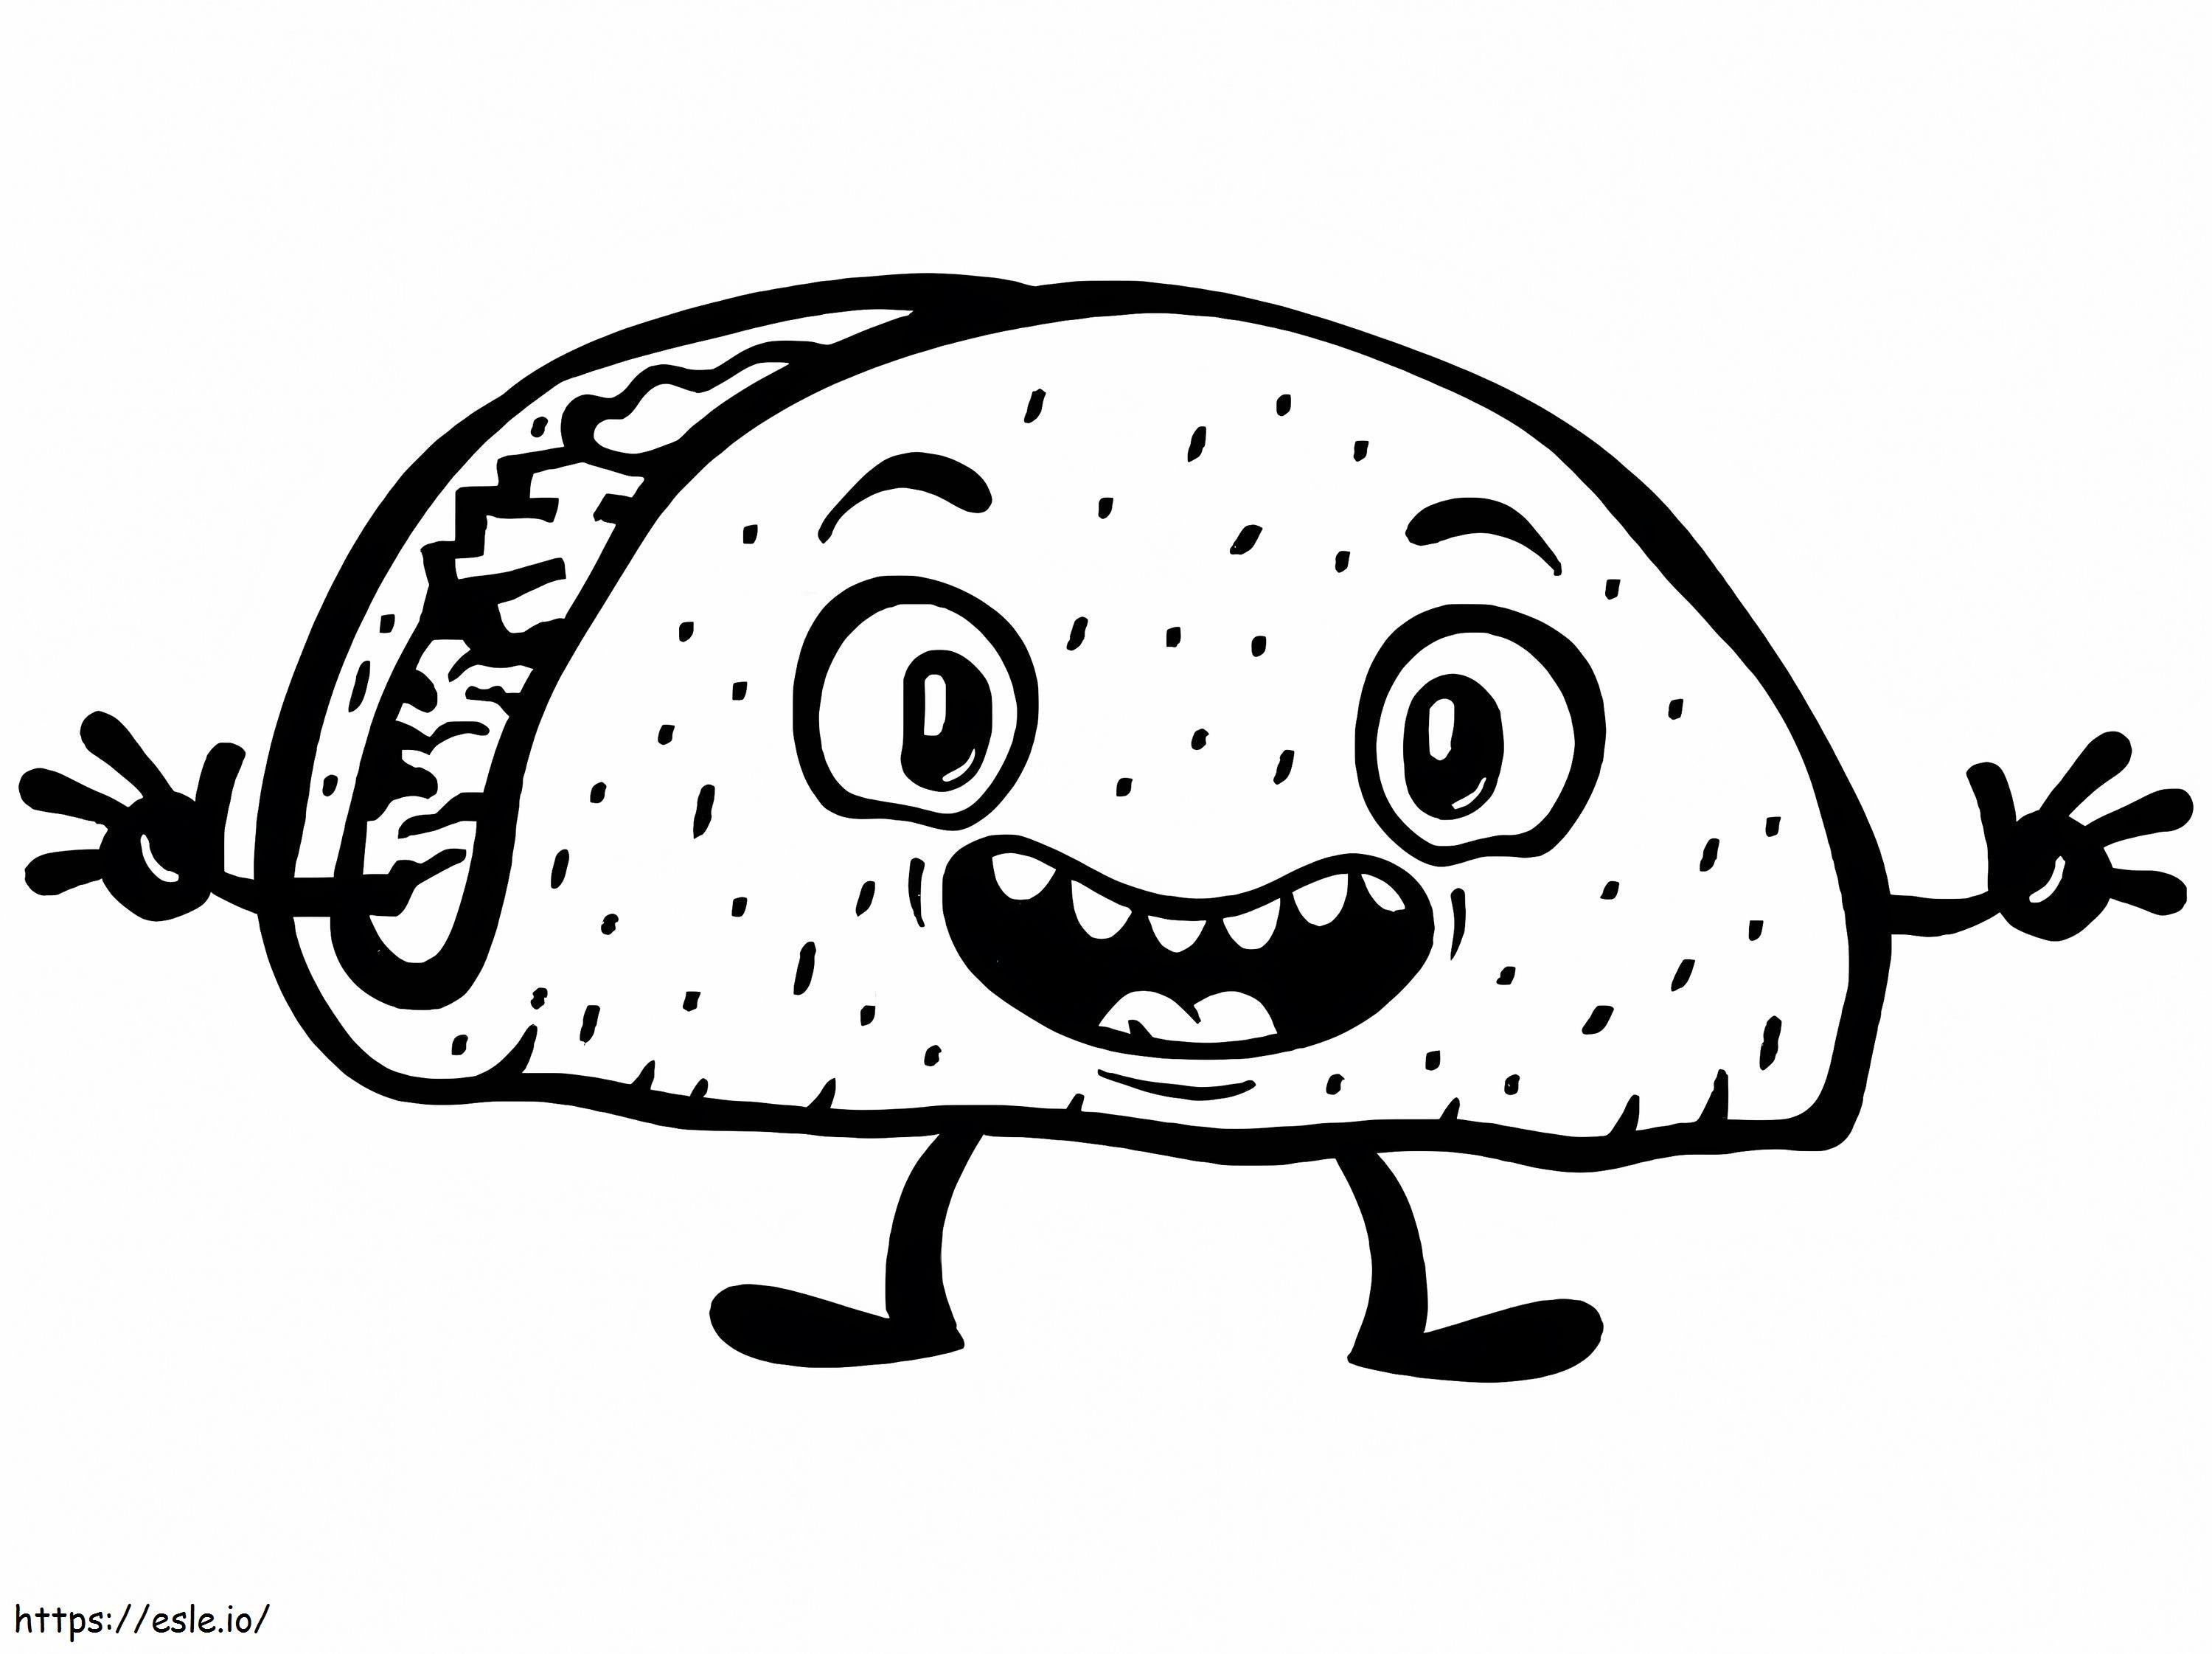 Lustiger Taco-Typ ausmalbilder